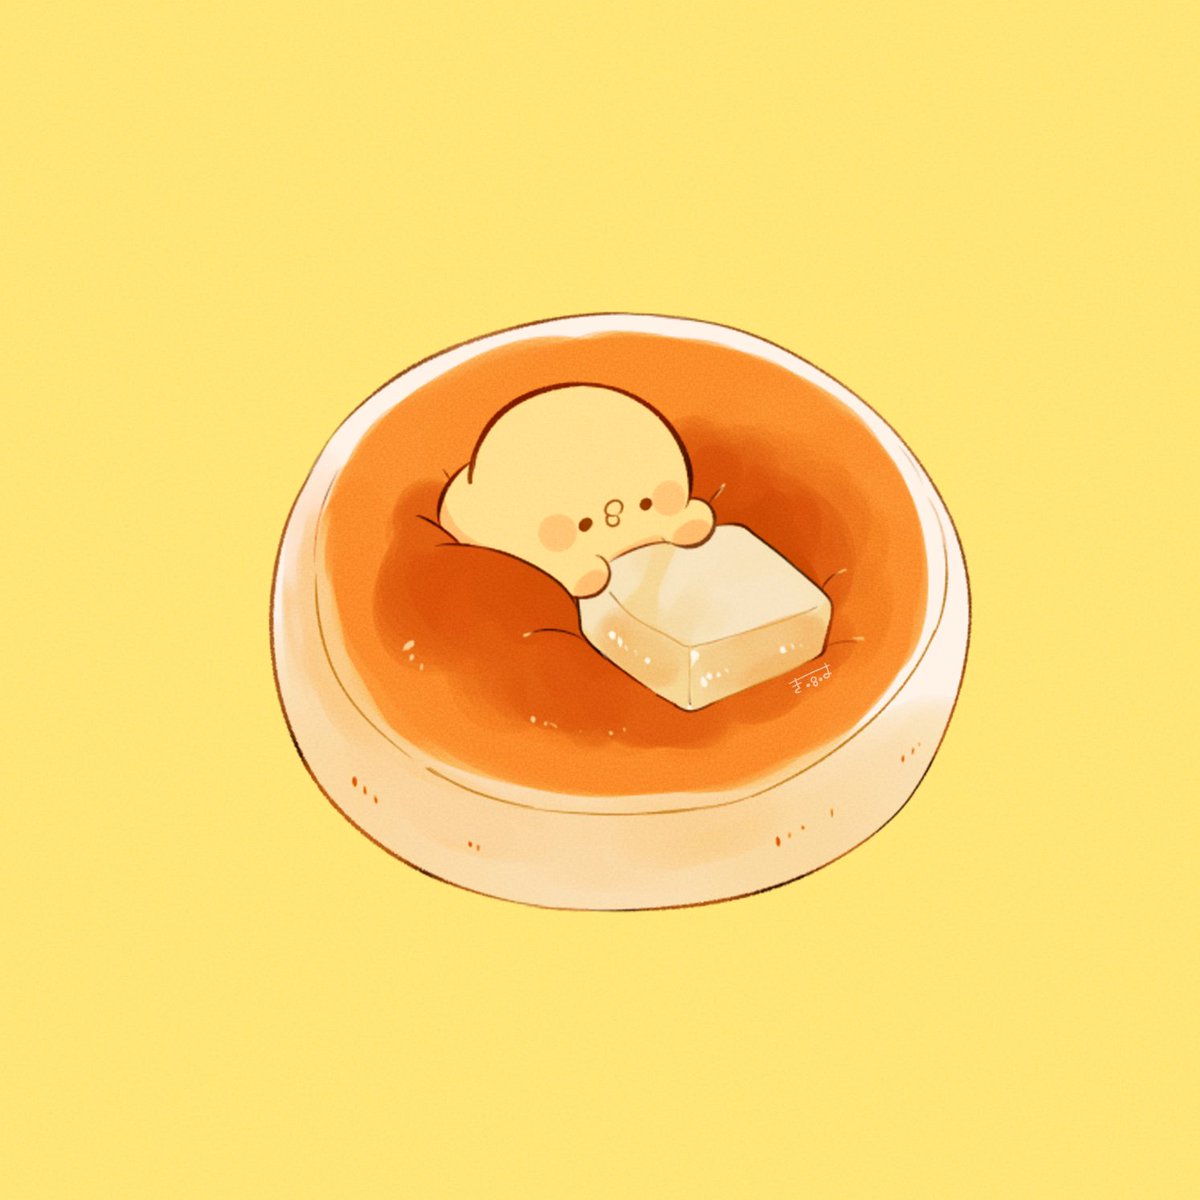 「pancake#きみピヨ 」|てんみやきよのイラスト